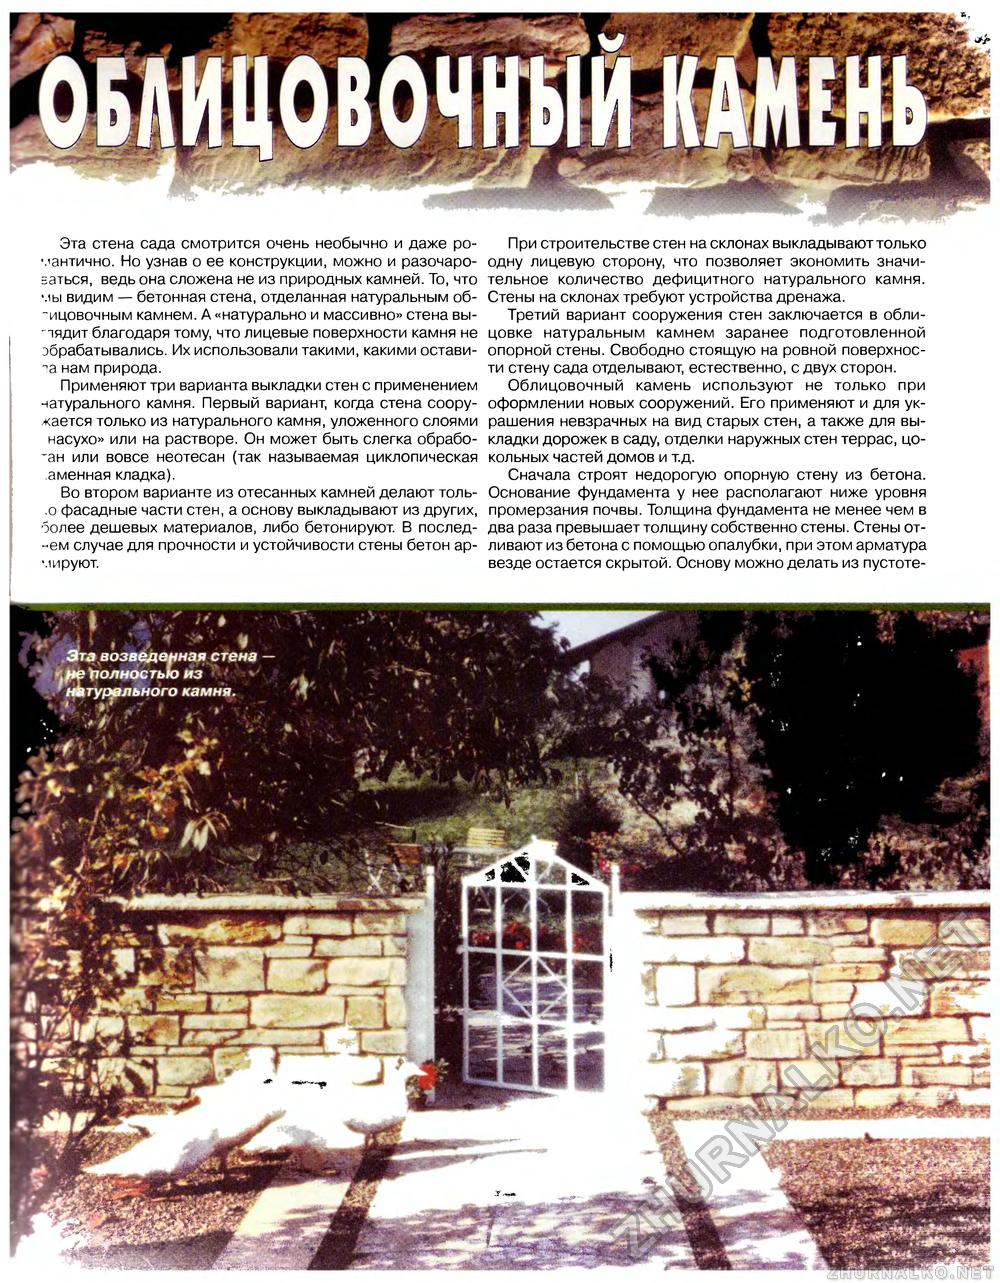 Дом 1998-11, страница 45